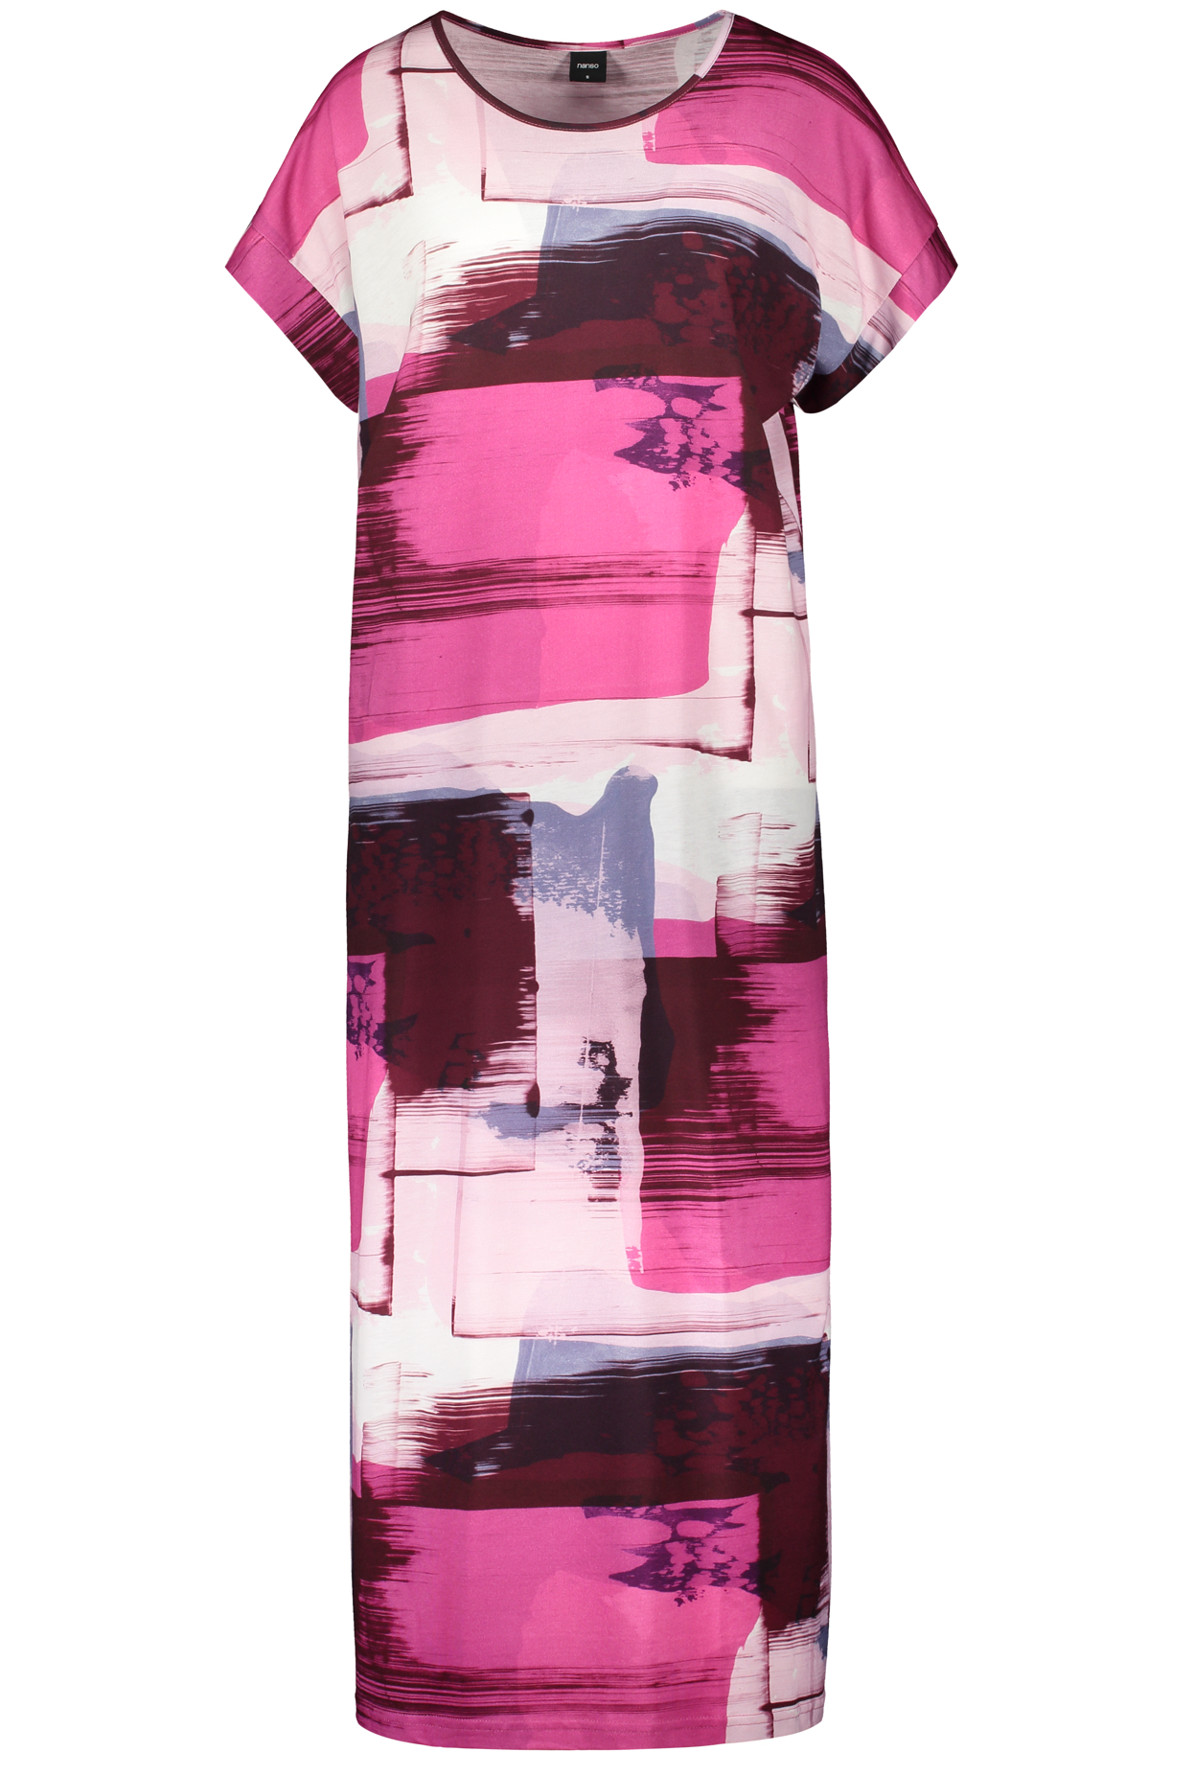 spænding Stå på ski licens Nanso lang natkjole med grafisk print i lilla tema - mange styles - Hos  Lohse